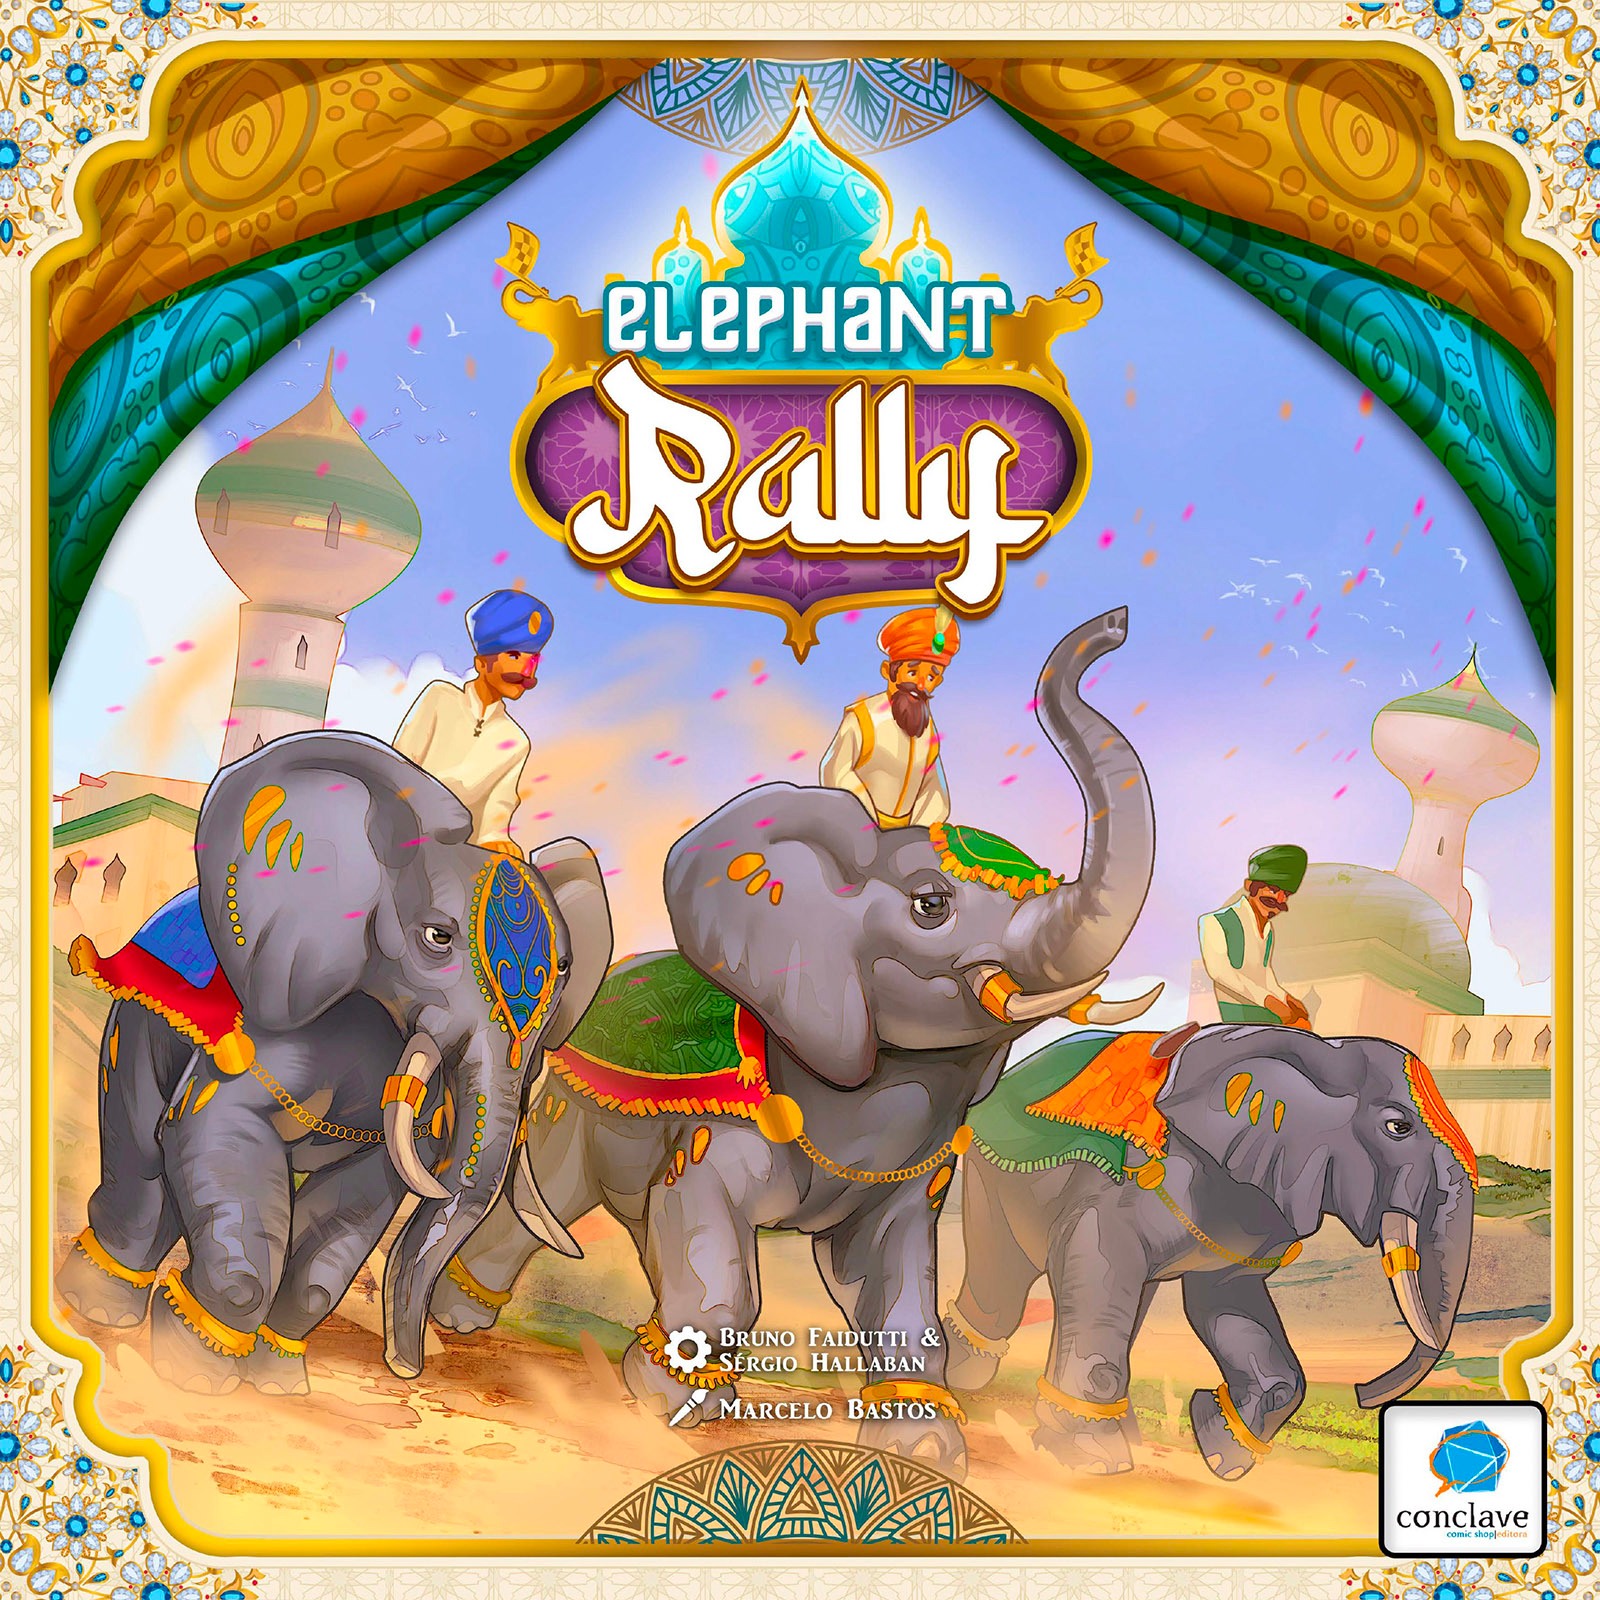 Okładka gry Elephant Rally